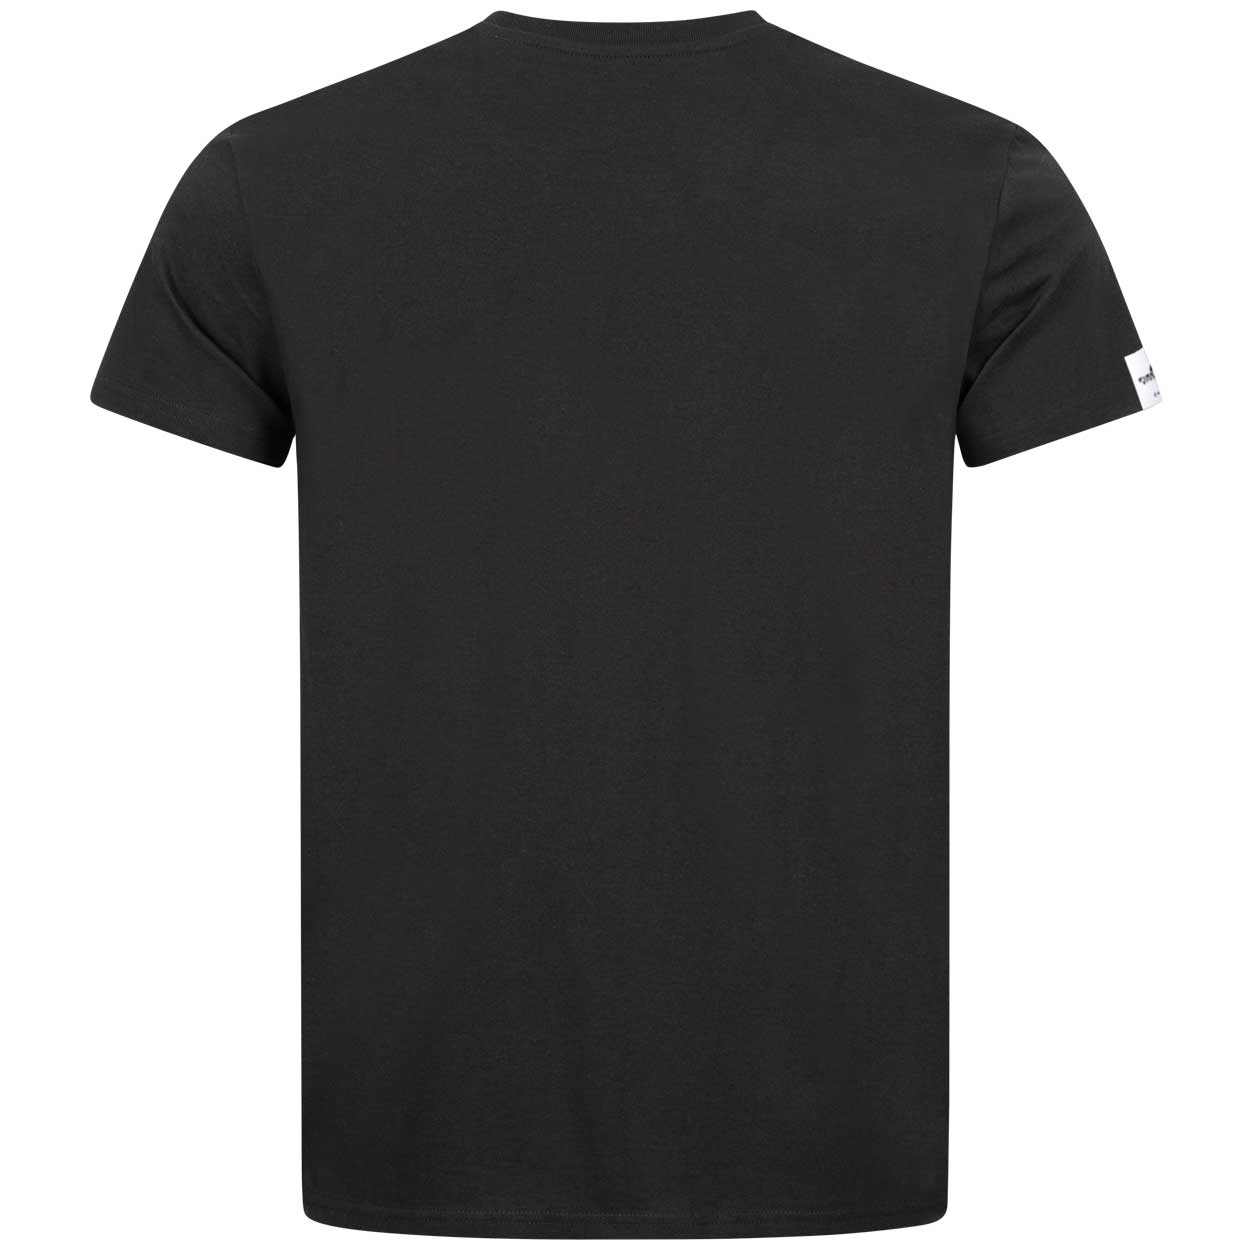 Feuerwehr Angriffstrupp Design - Männer T-Shirt